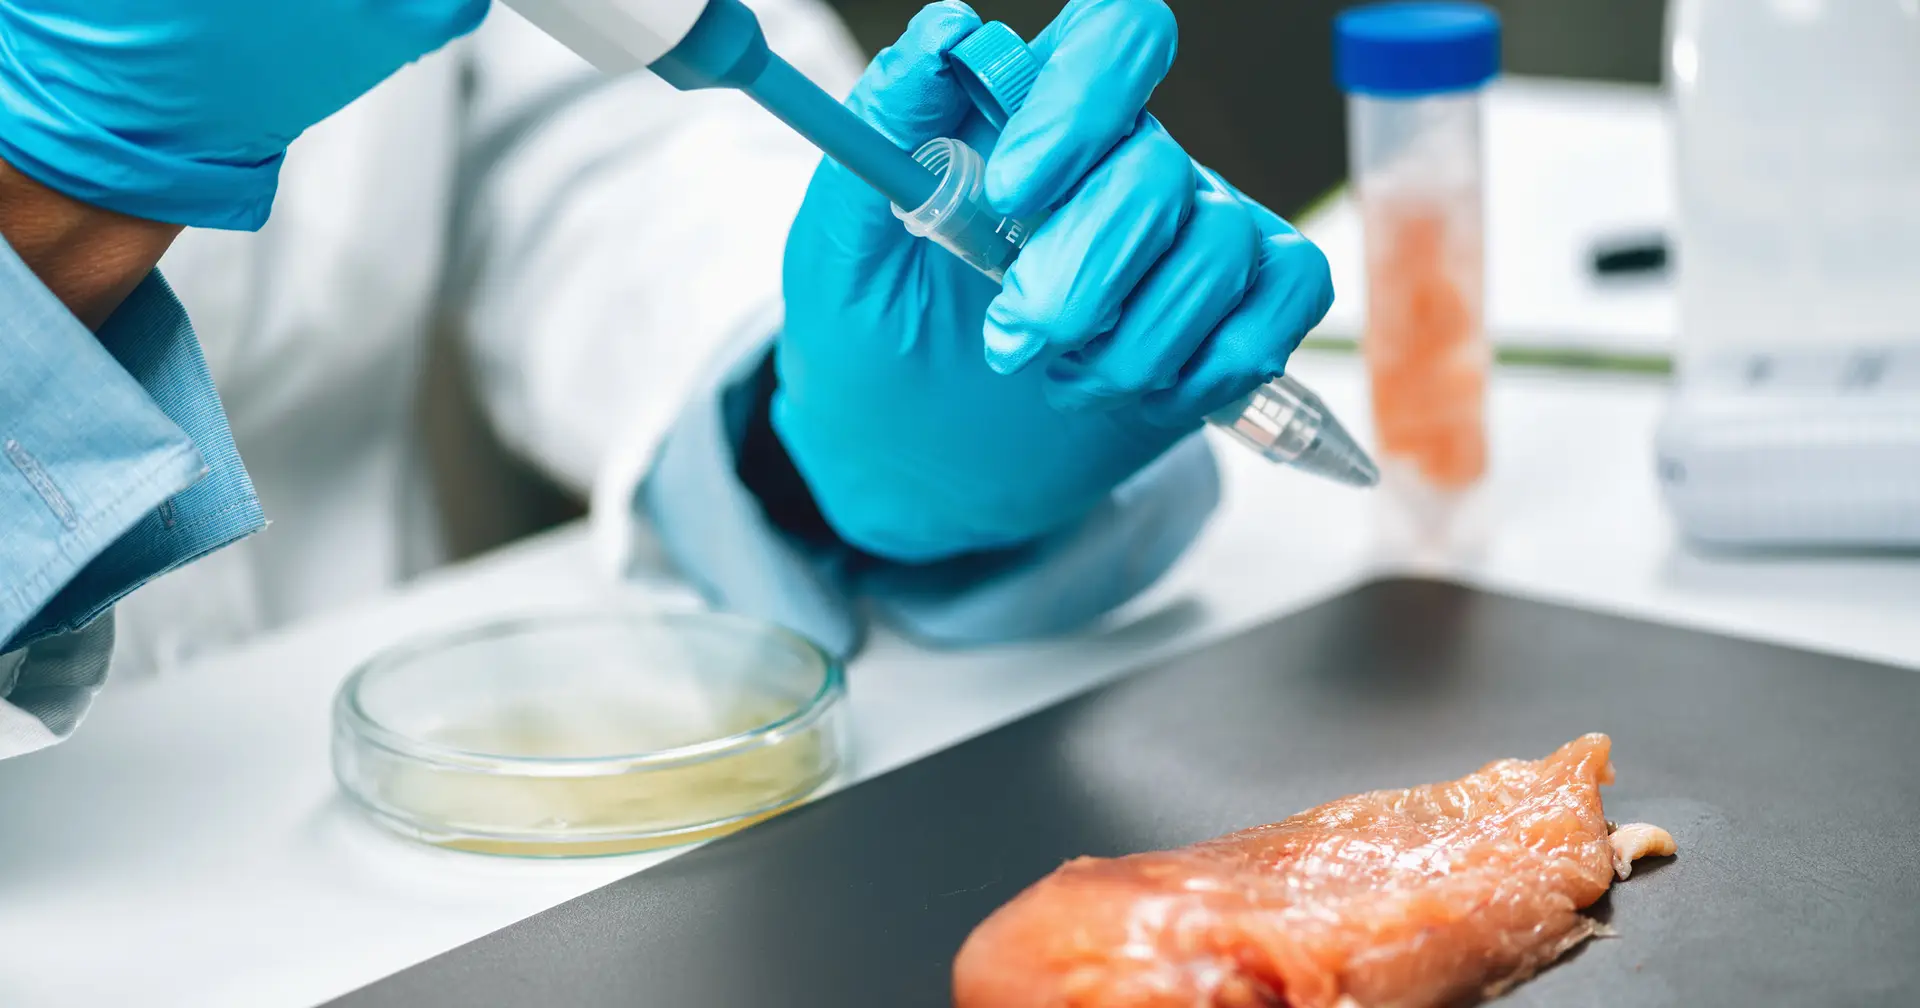 Relatório: as carnes de laboratório são uma história de “hype” e “marketing” e “não vão salvar o planeta”